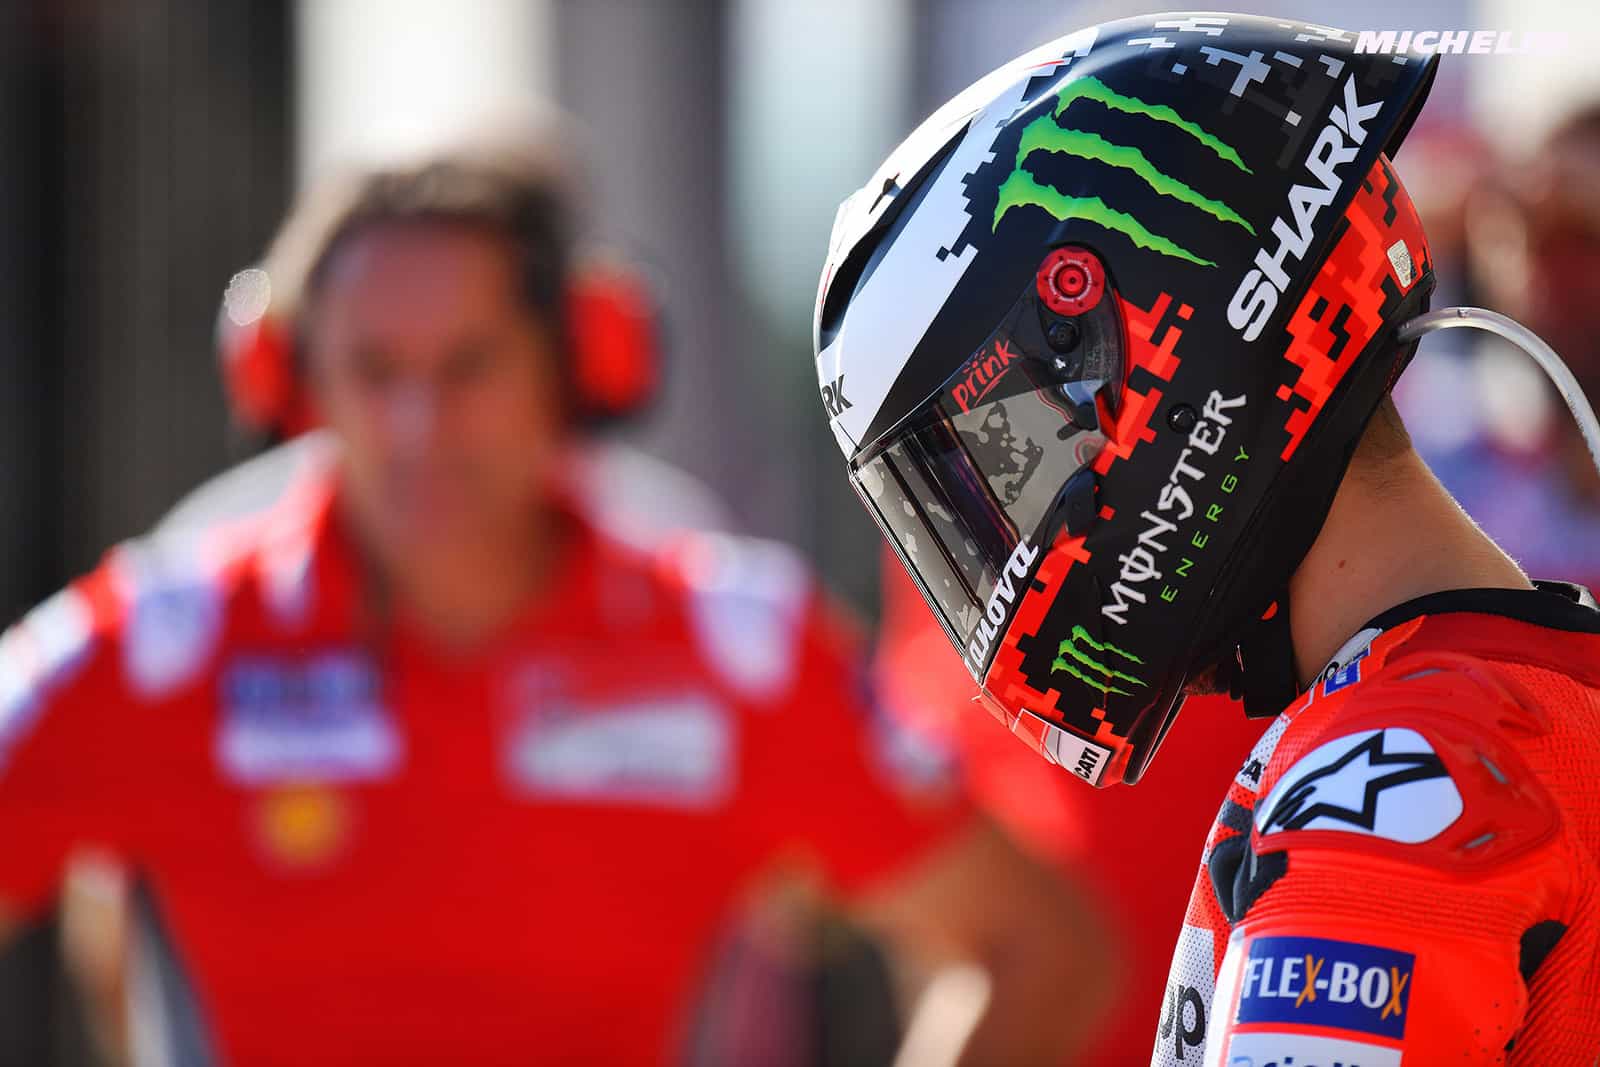 Ducatiとホルへ・ロレンソが2021年の契約交渉を開始